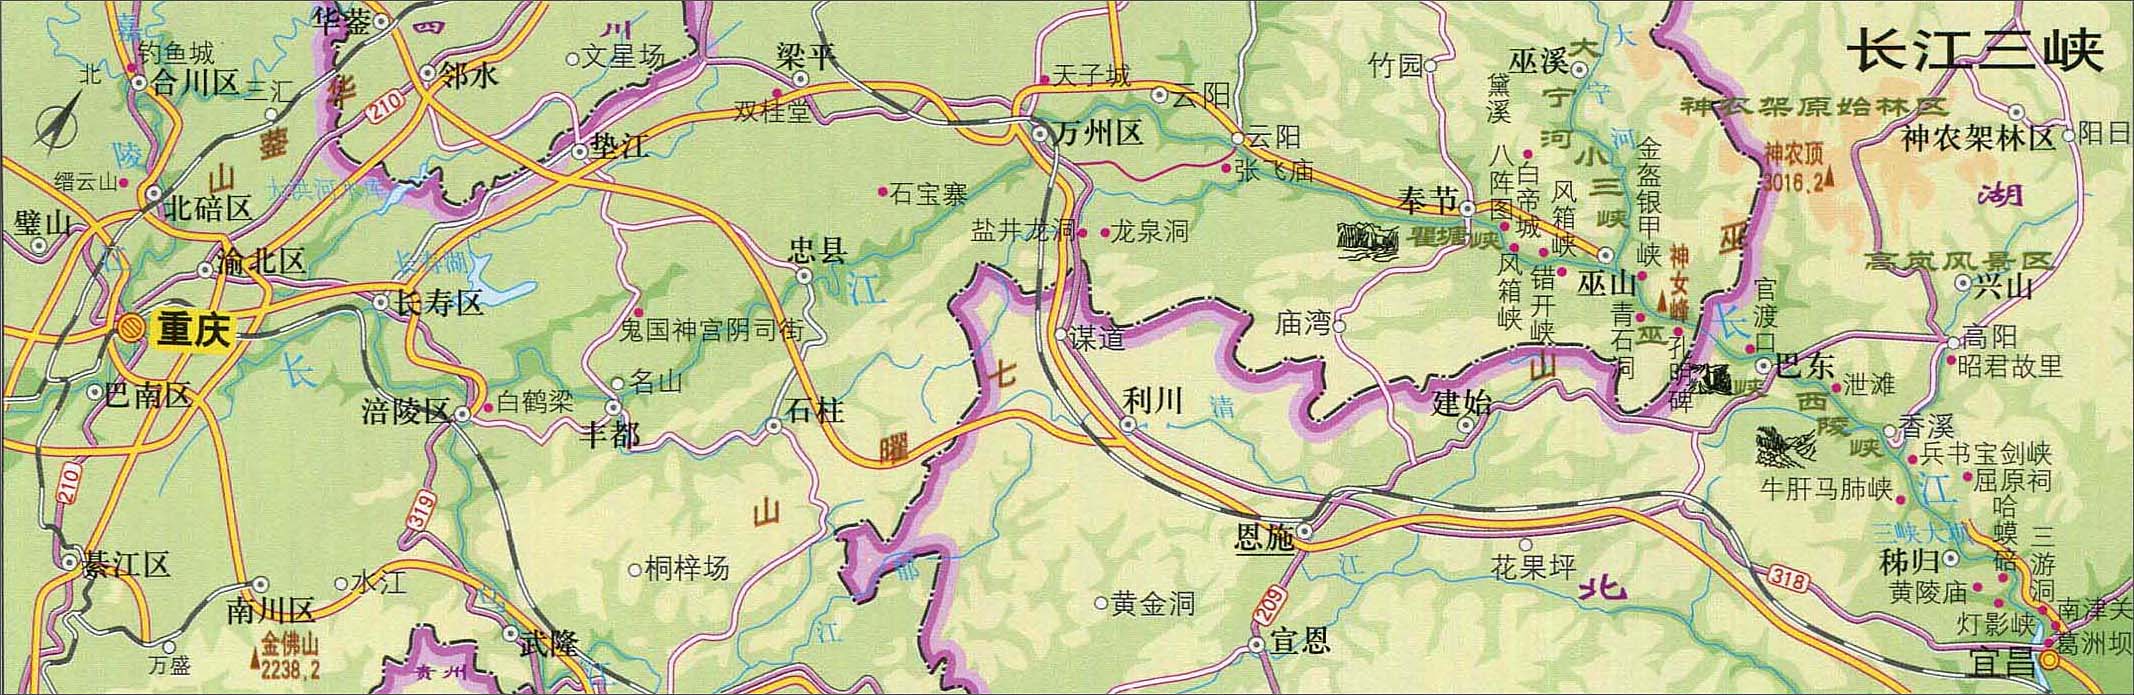 长江三峡旅游地图图片